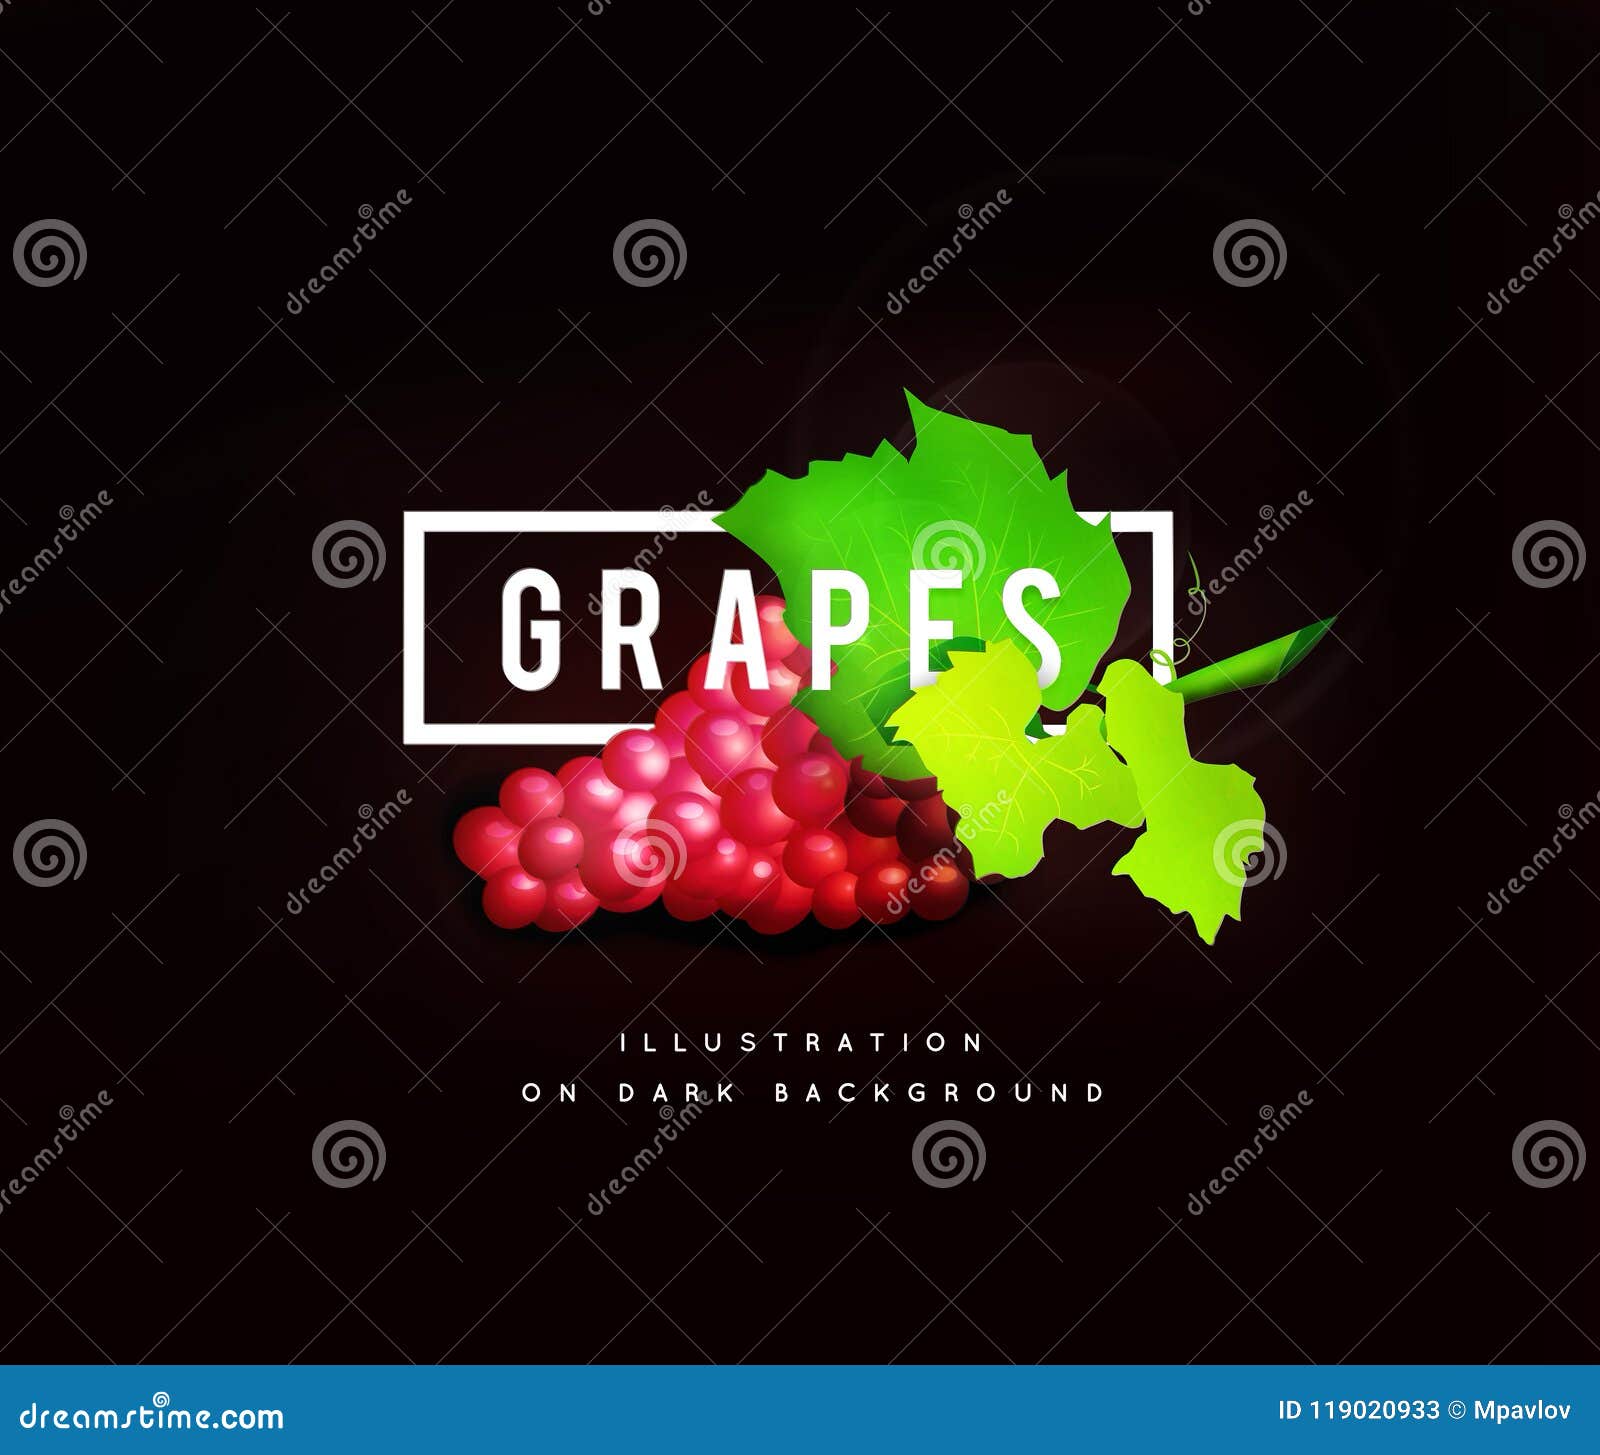 Ветвь виноградины с красными виноградинами Реалистическое illustartion. Ветвь виноградины с красными виноградинами на белой предпосылке Иллюстрация на темной предпосылке